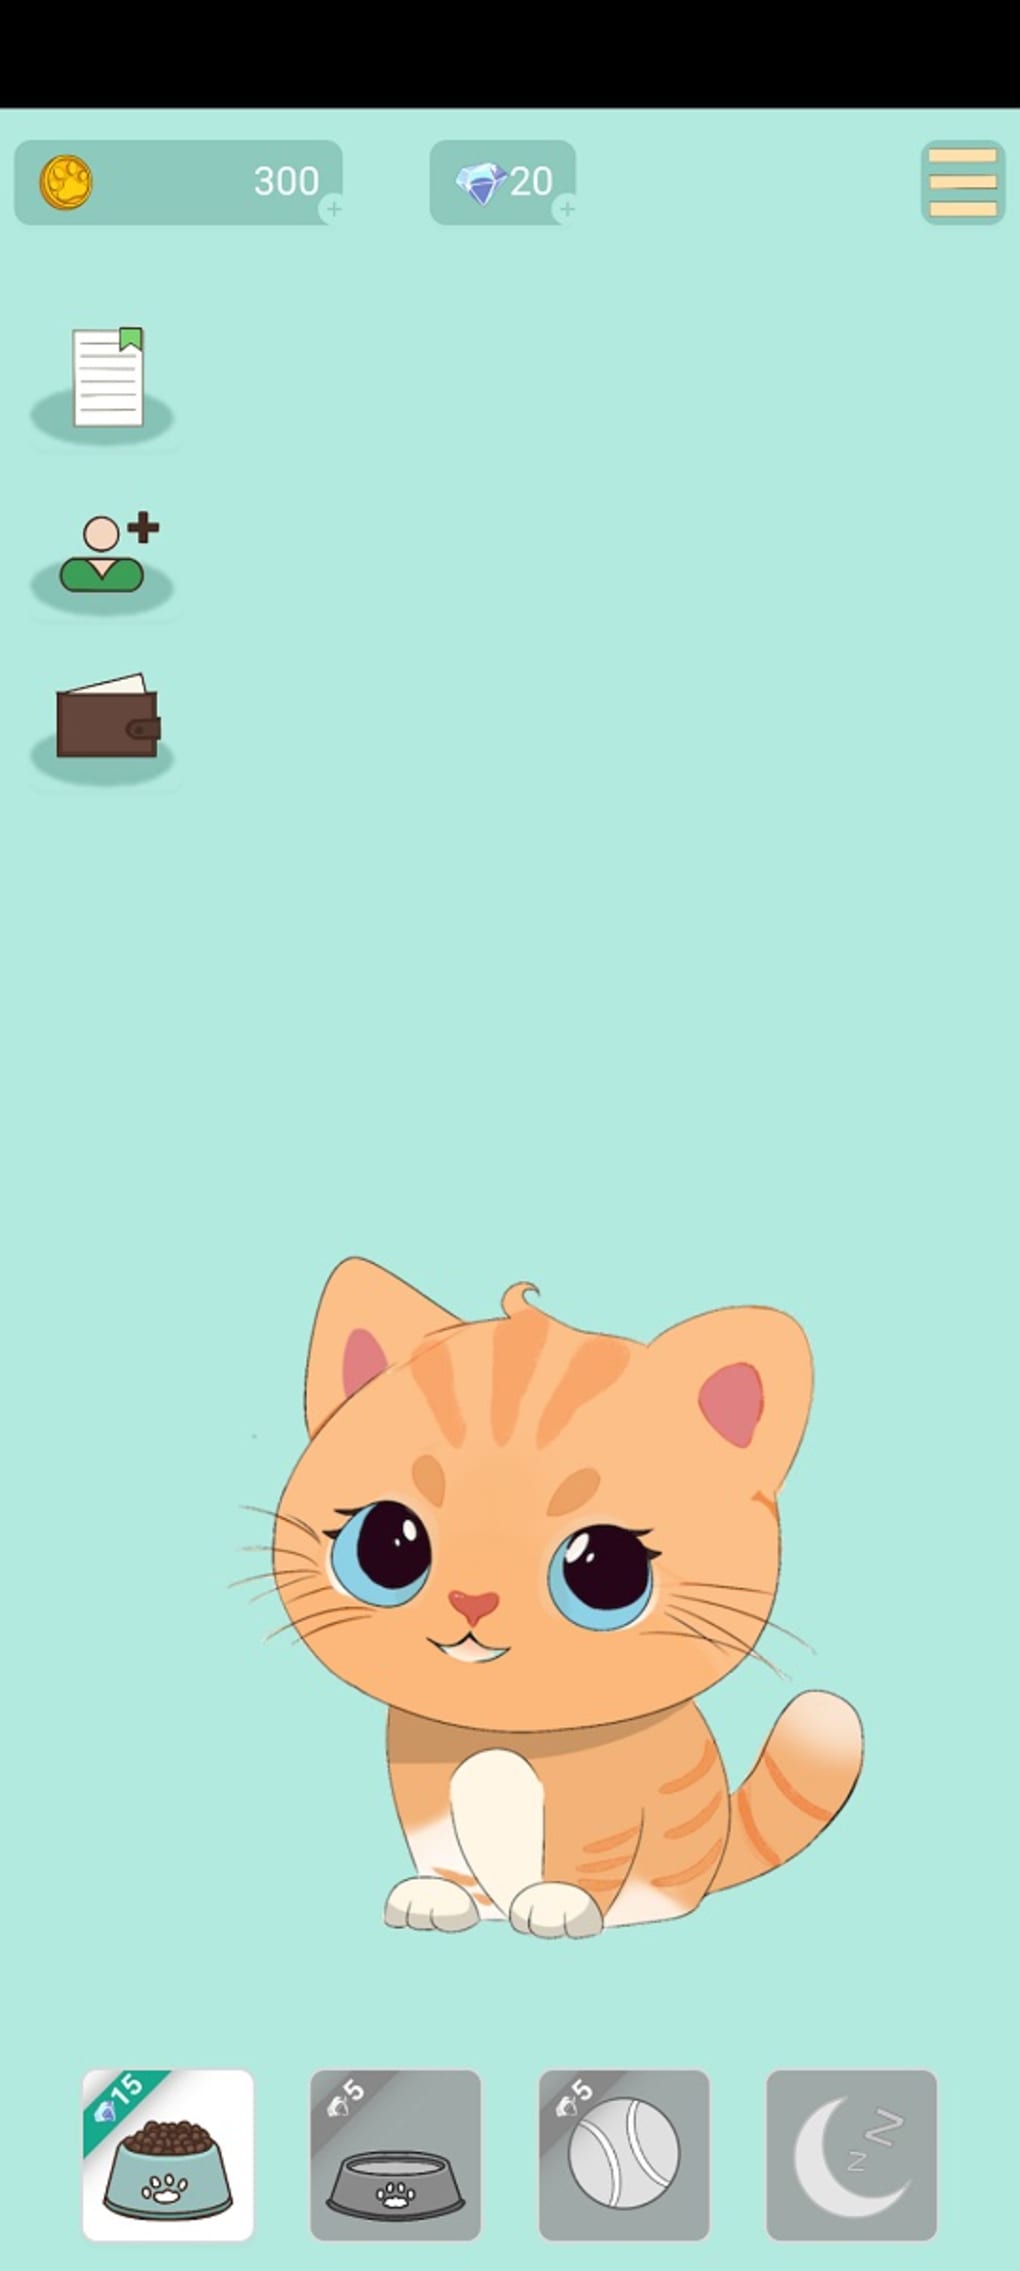 Jogos Simulador de Gato 3D versão móvel andróide iOS apk baixar